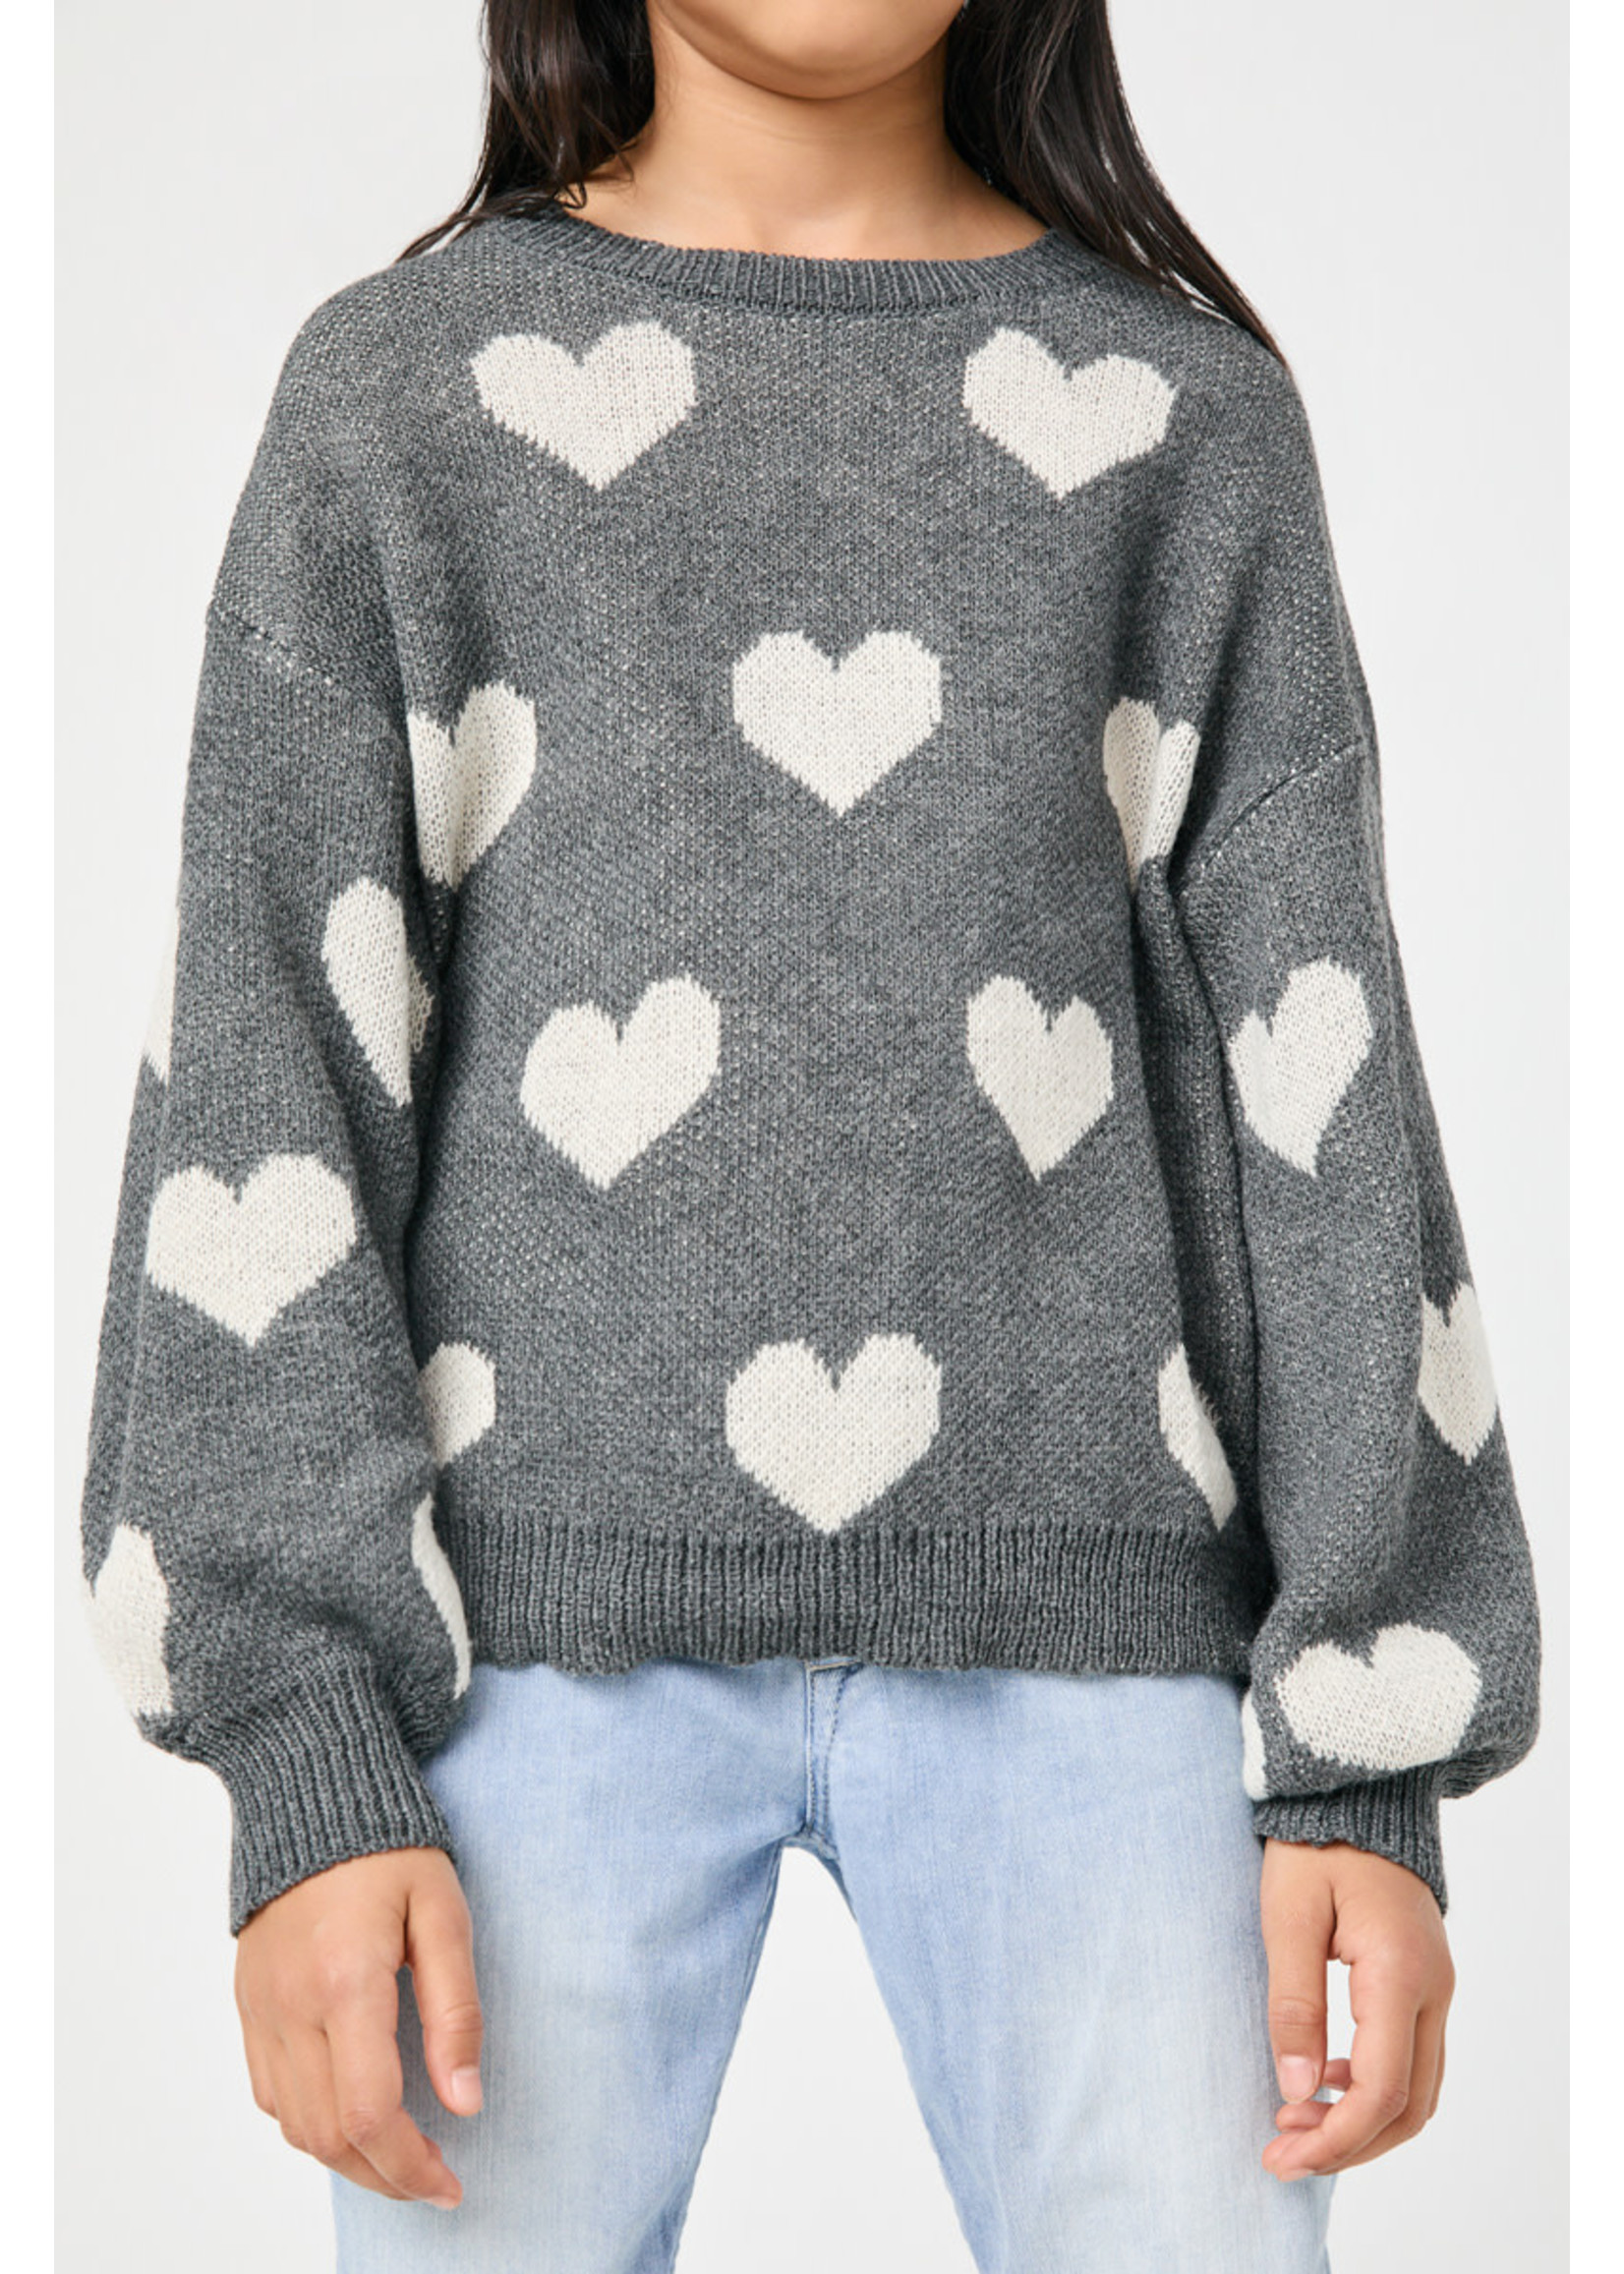 Hayden Girl Grey Heart Pullover Sweater